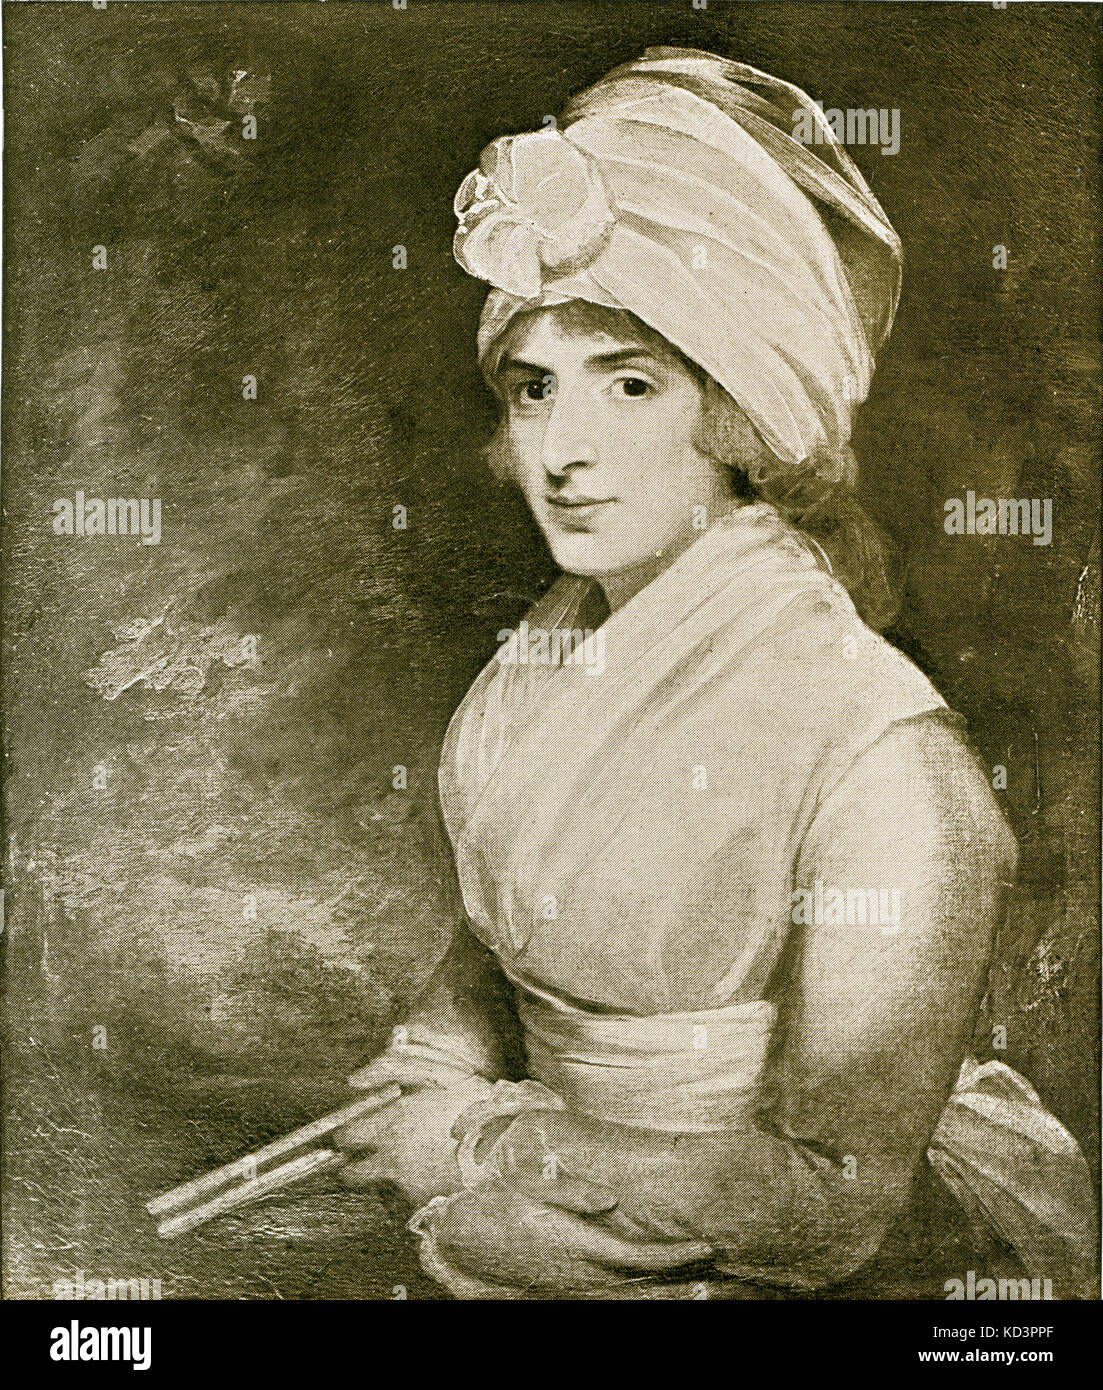 Sarah Siddons (nata Kemble) dopo la pittura di Gilbert Stuart , 1787. Ritratto dell'attrice inglese, 1755 - 1831. Famoso per aver giocato a Lady Macbeth. Foto Stock